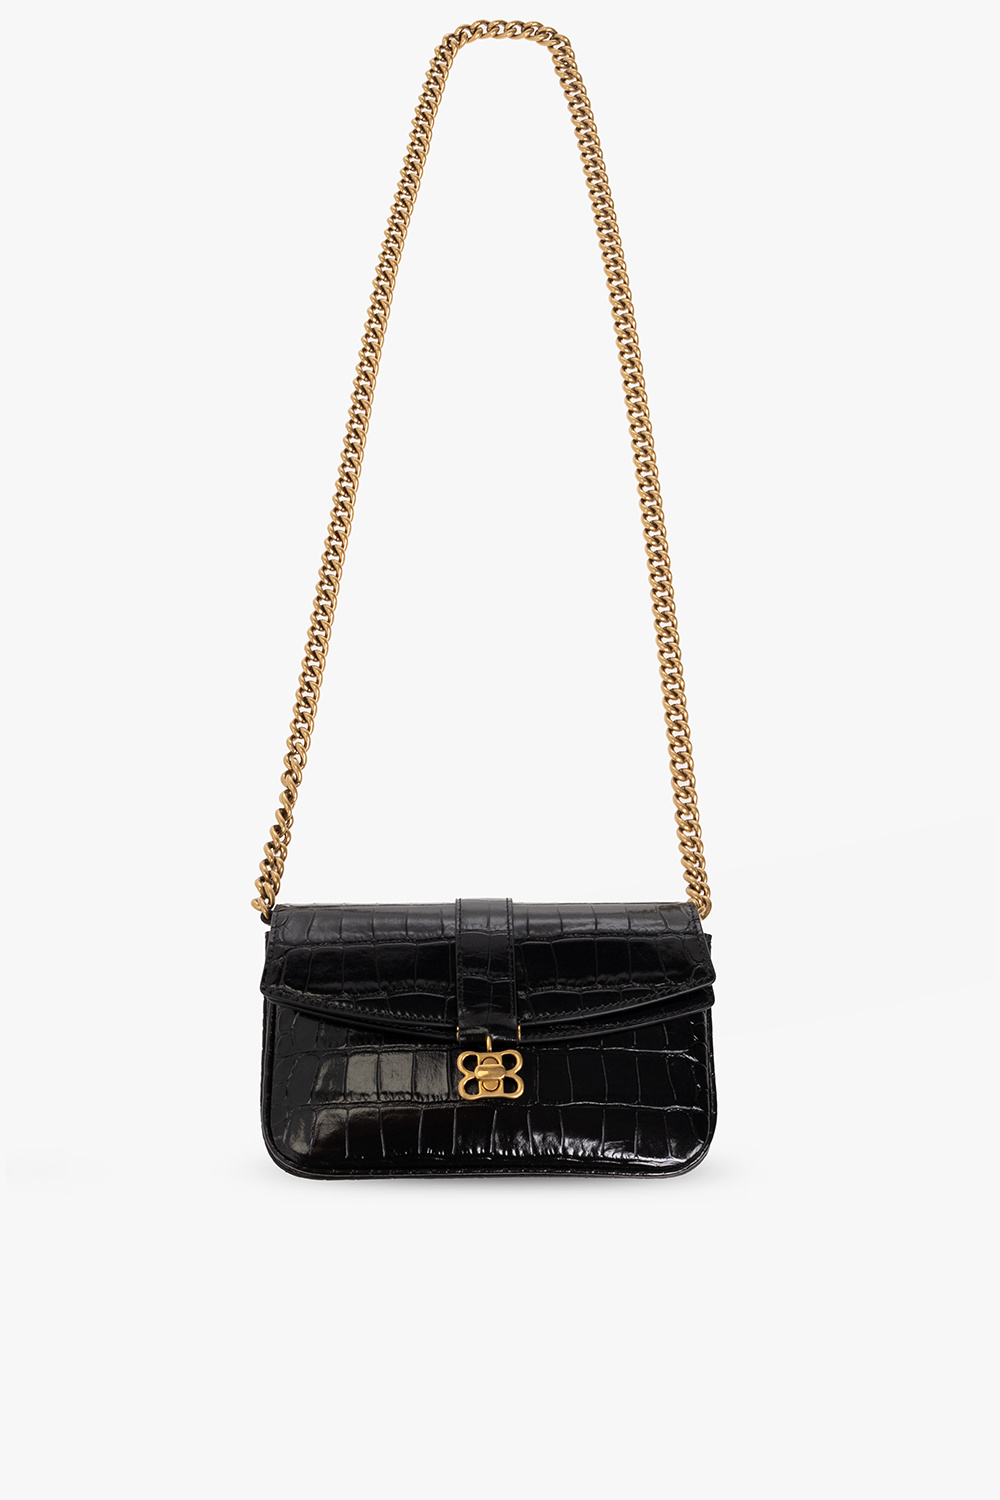 Balenciaga Car Flap shoulder bag - Black